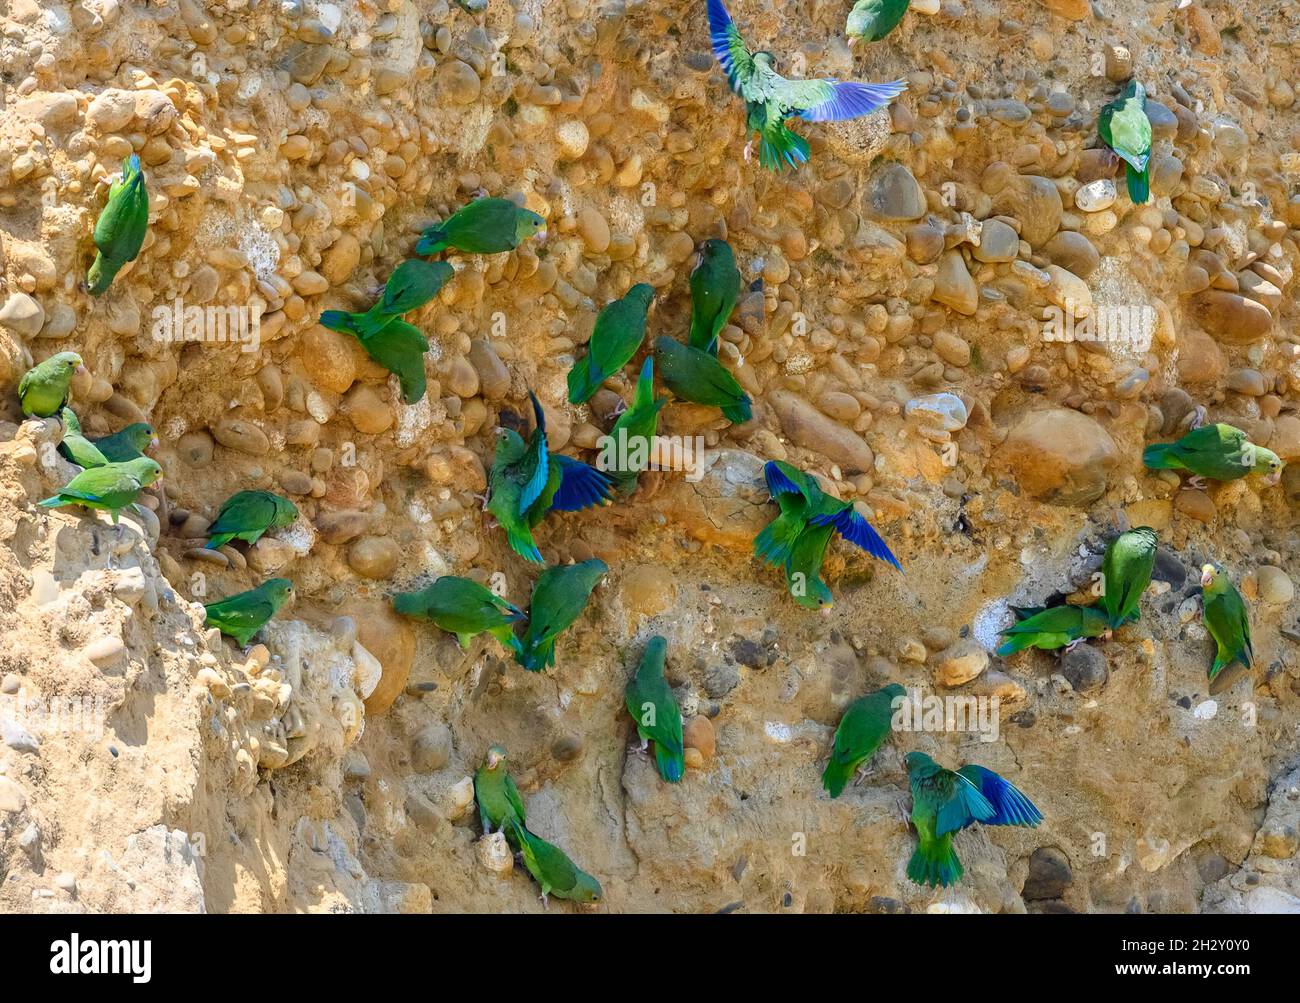 Un gregge di parakeets alati di cobalto (Brogeris cyanoptera) che si nutrono di sale su un crick di argilla della riva del fiume Amazzone. Madre de Dios, Perù, Sud America. Foto Stock